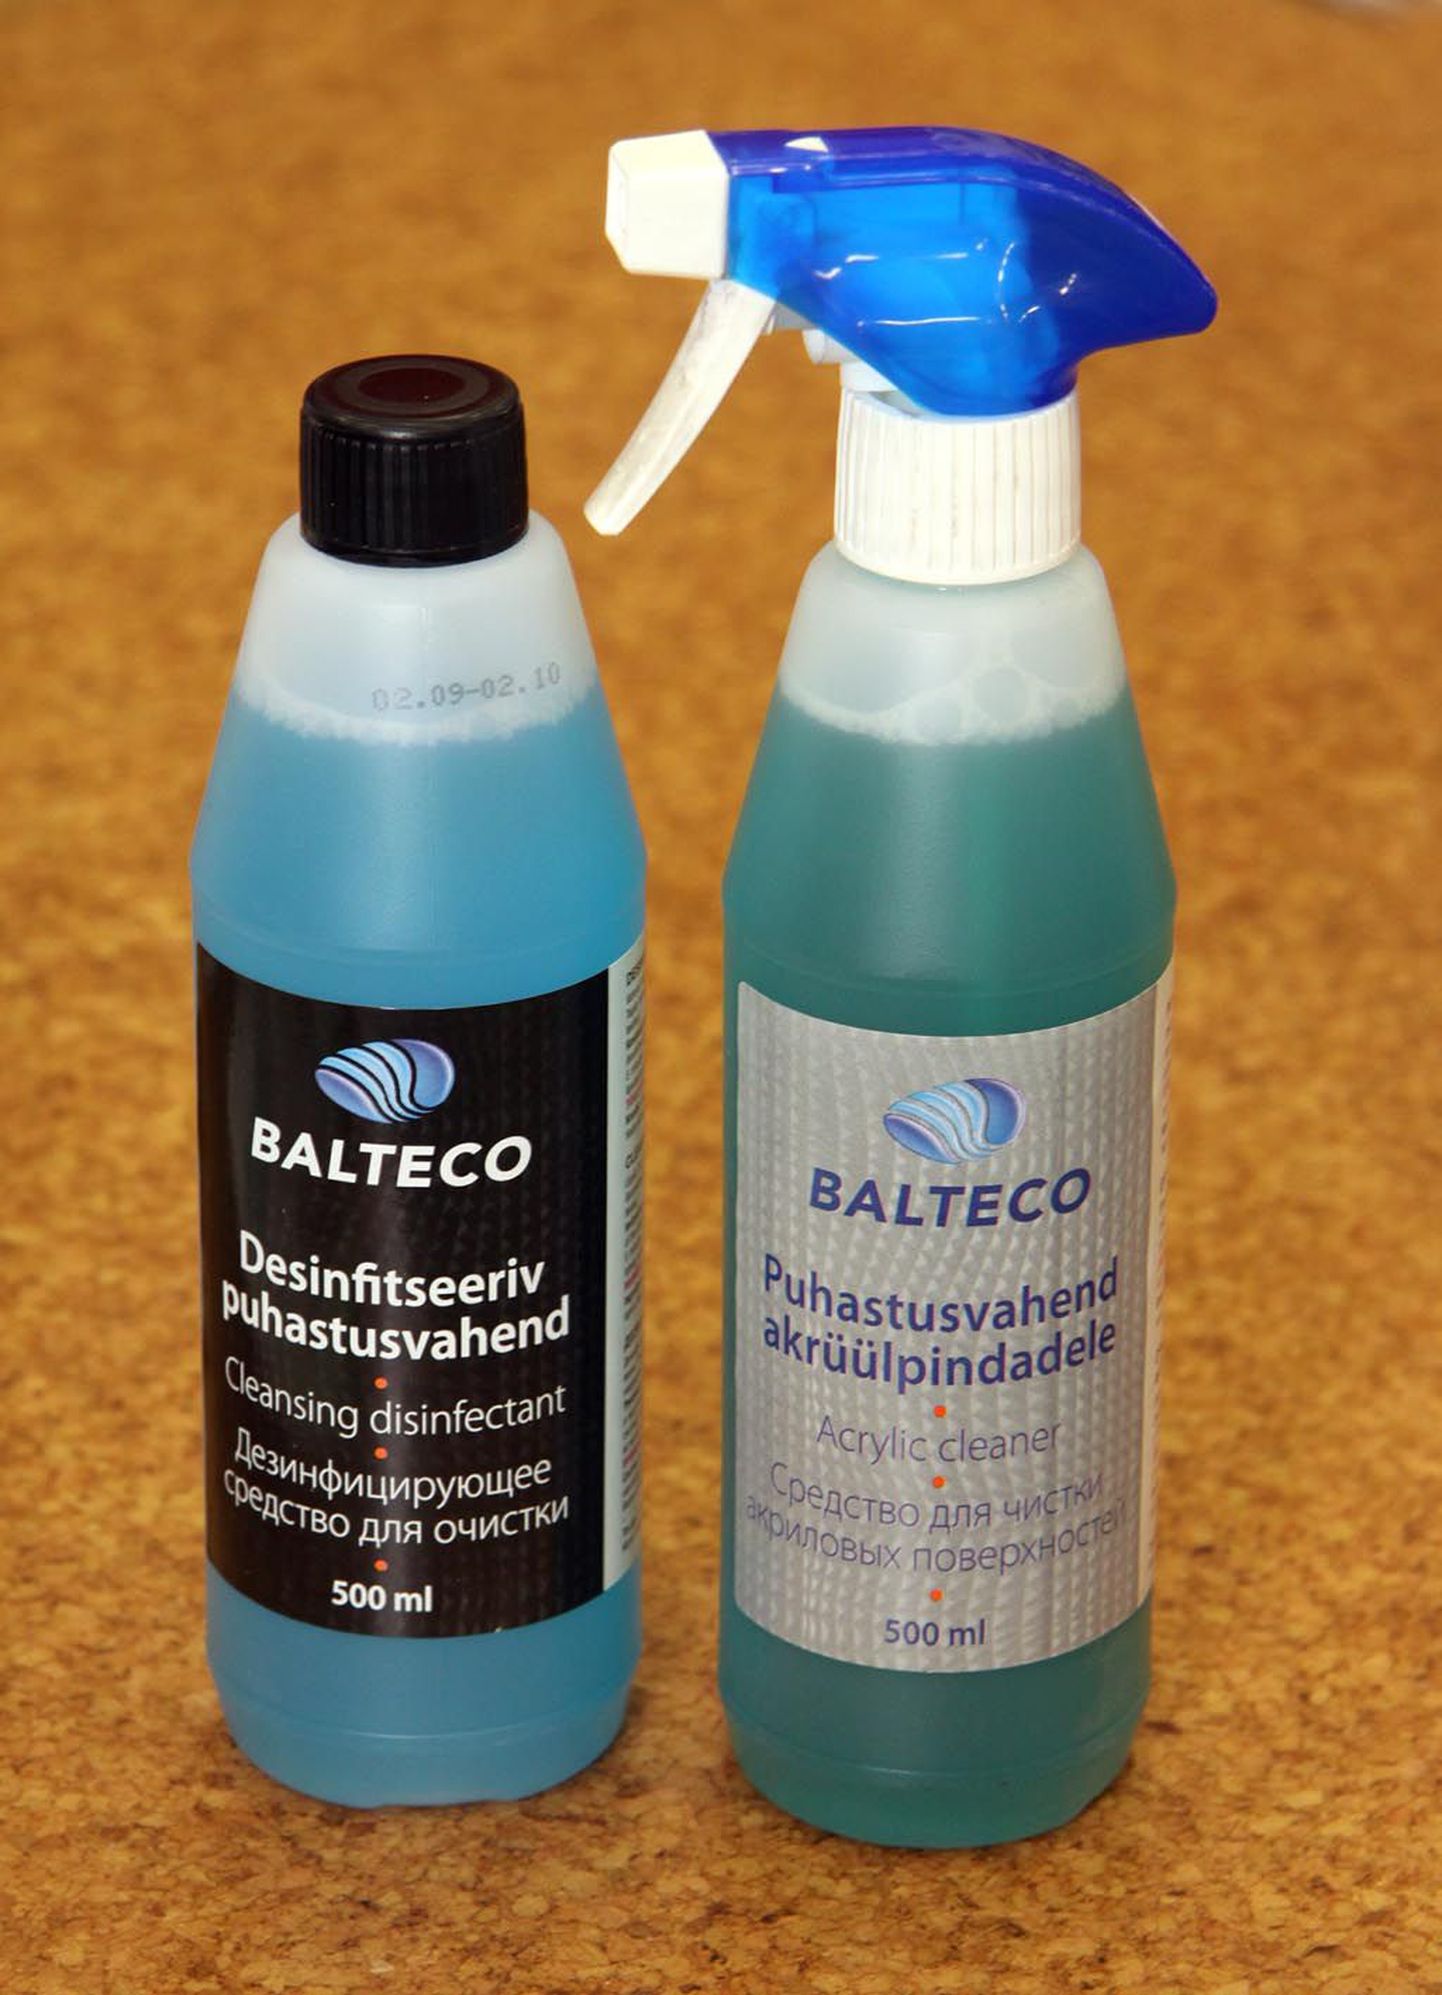 Kabiinide puhastamiseks peab kasutama spetsiaalseid akrüülpindade puhastusvahendeid, näiteks Balteco tooteid.